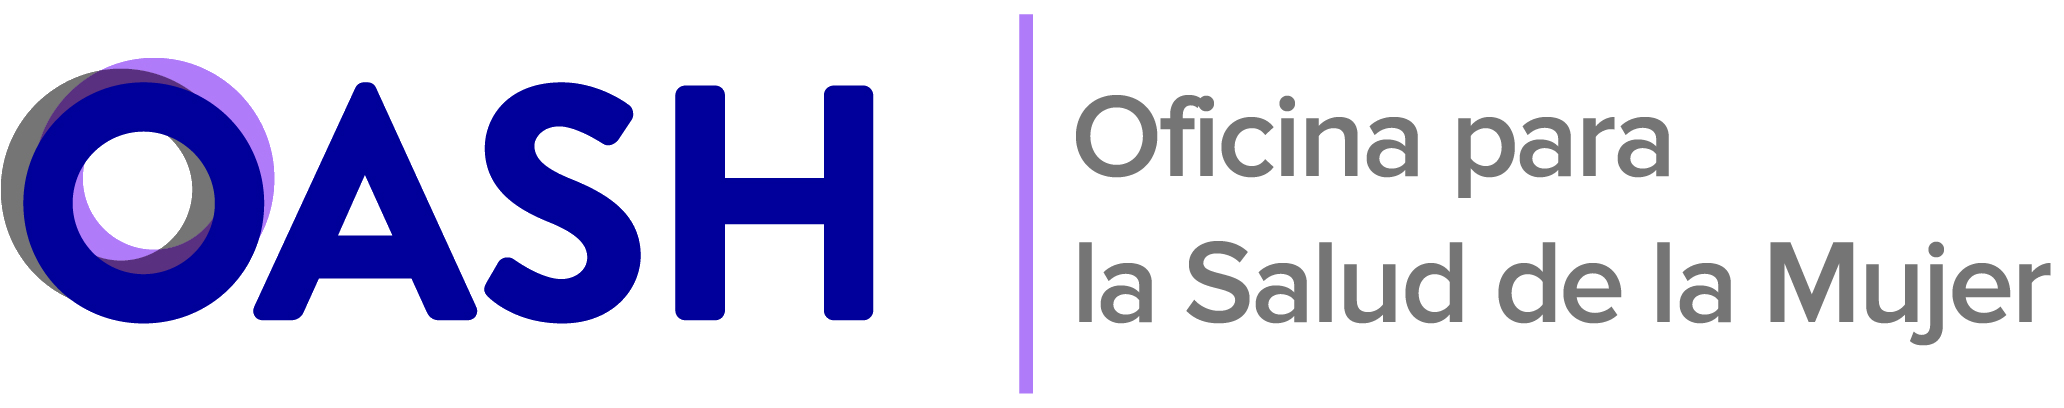 Logotipo de la Oficina para la Salud de la Mujer